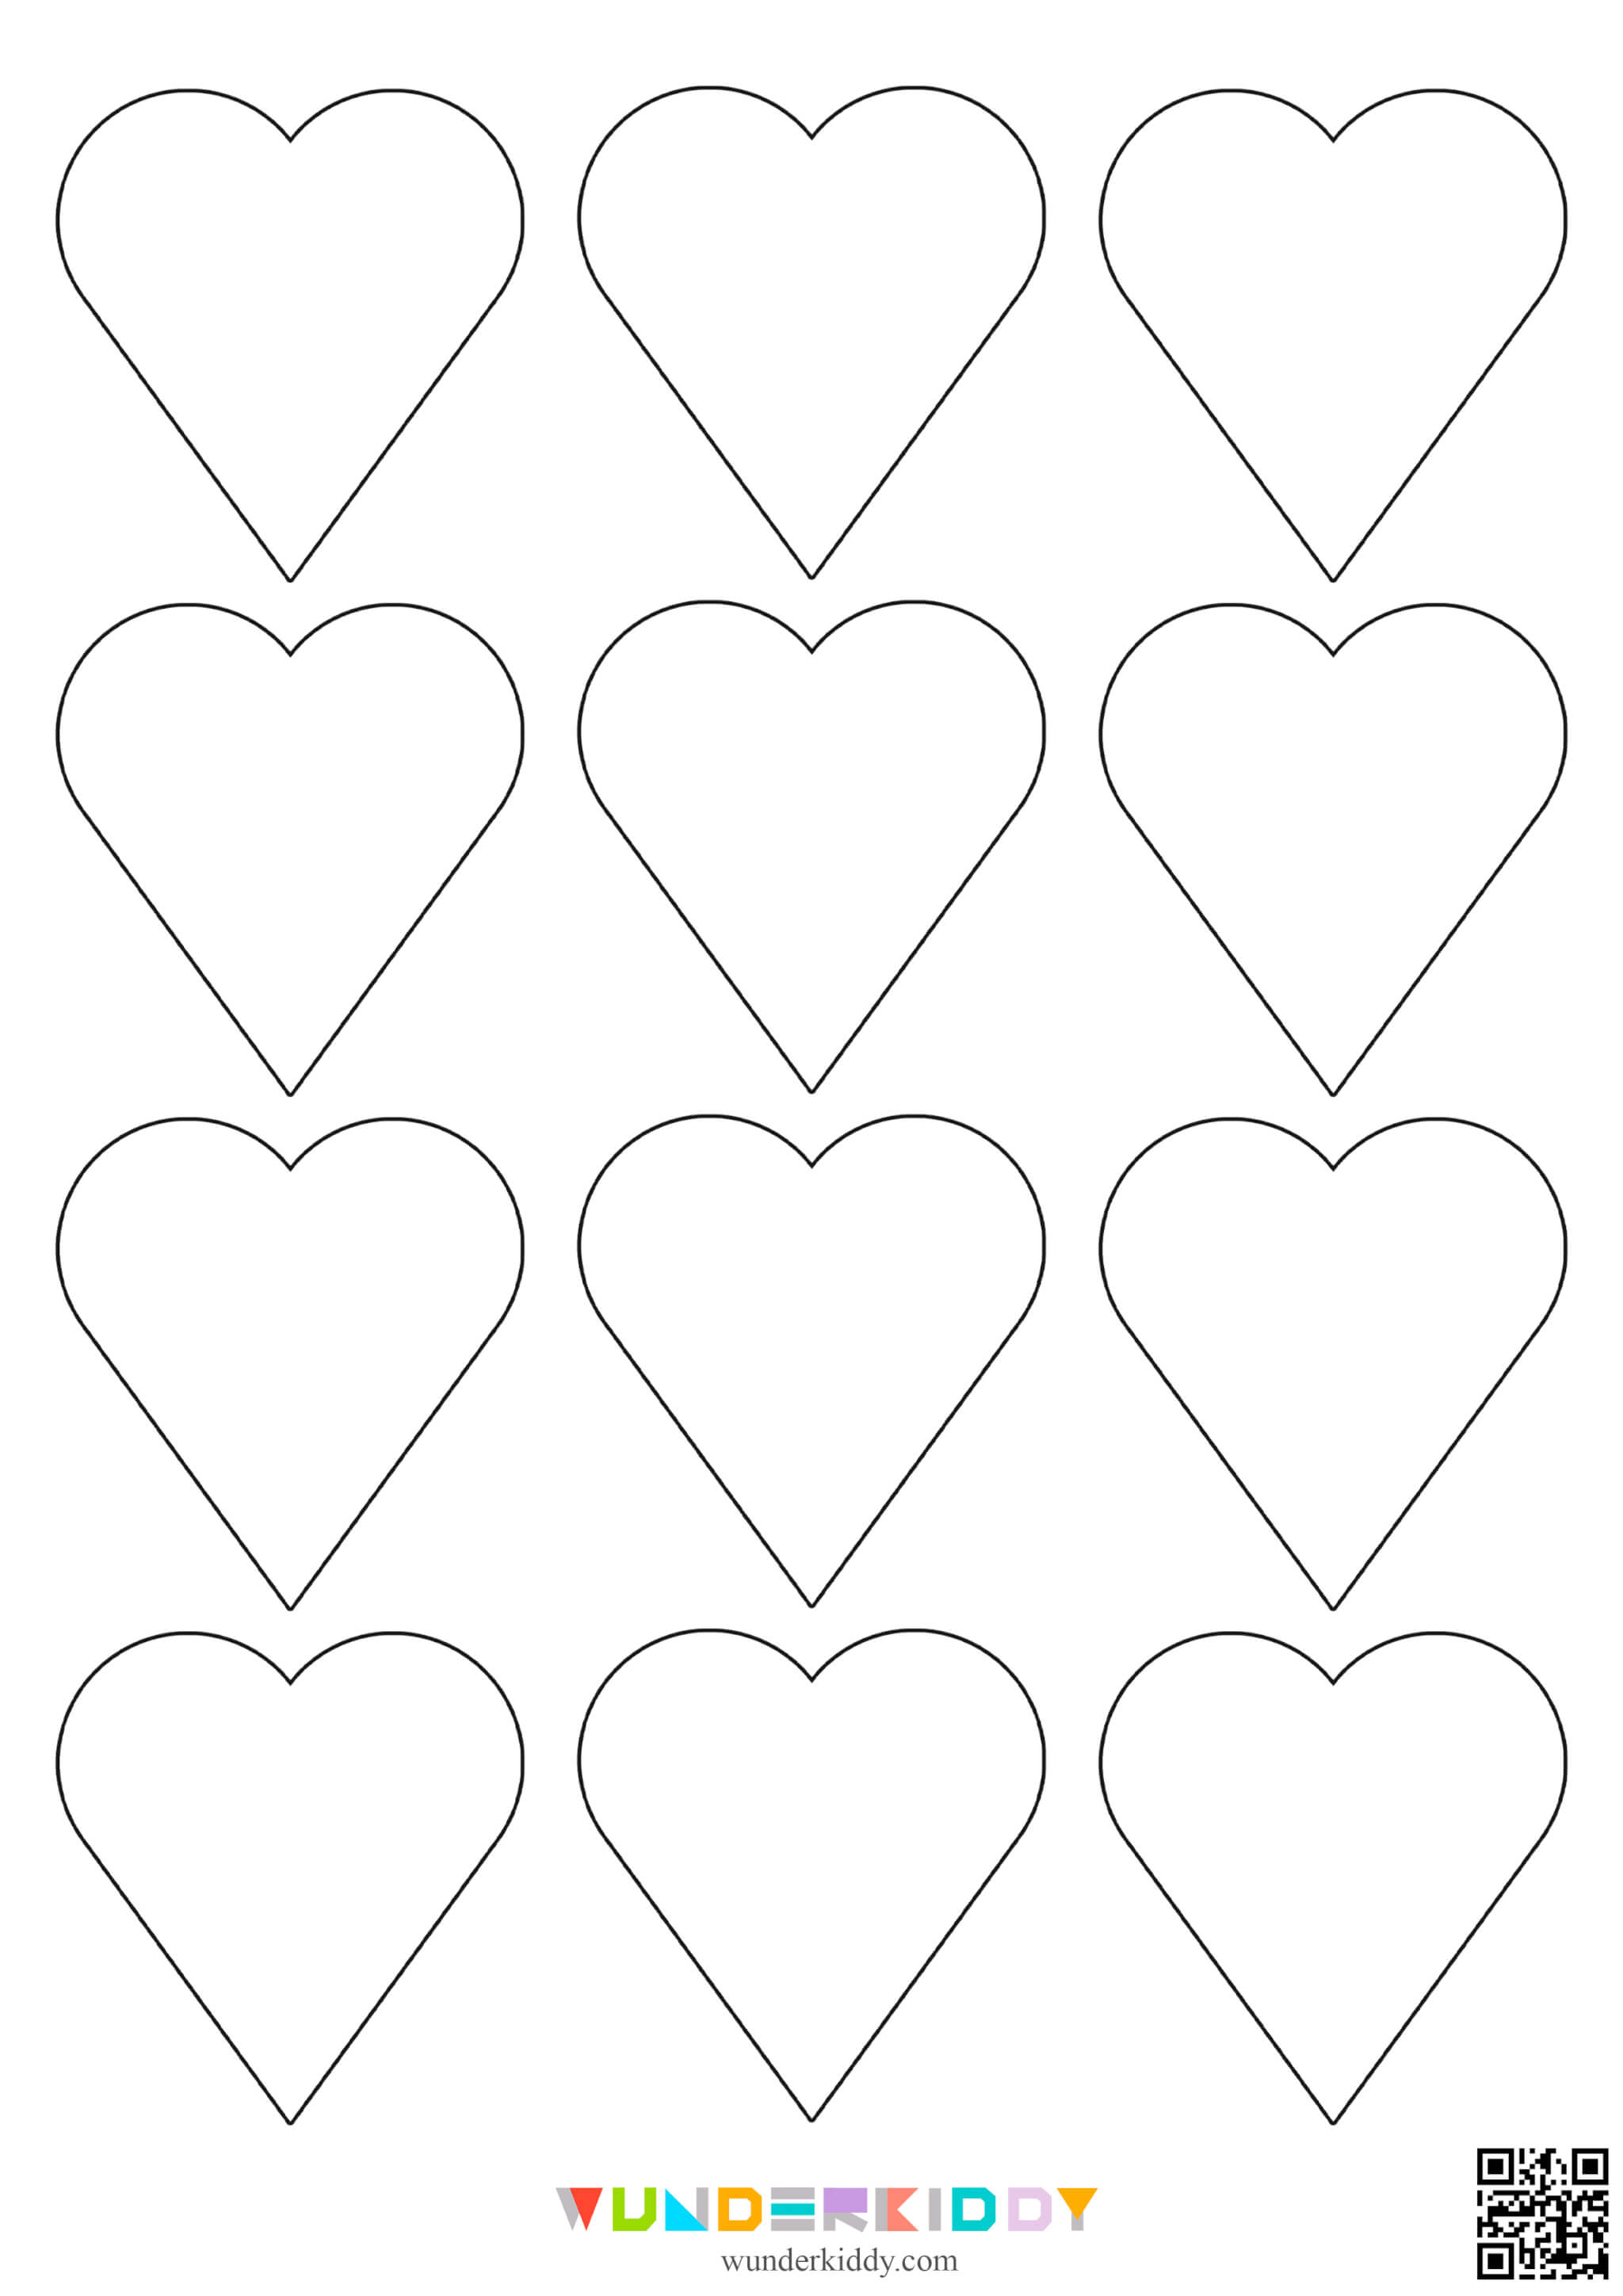 Контуры и шаблоны «Сердечки» для вырезания - Изображение 8